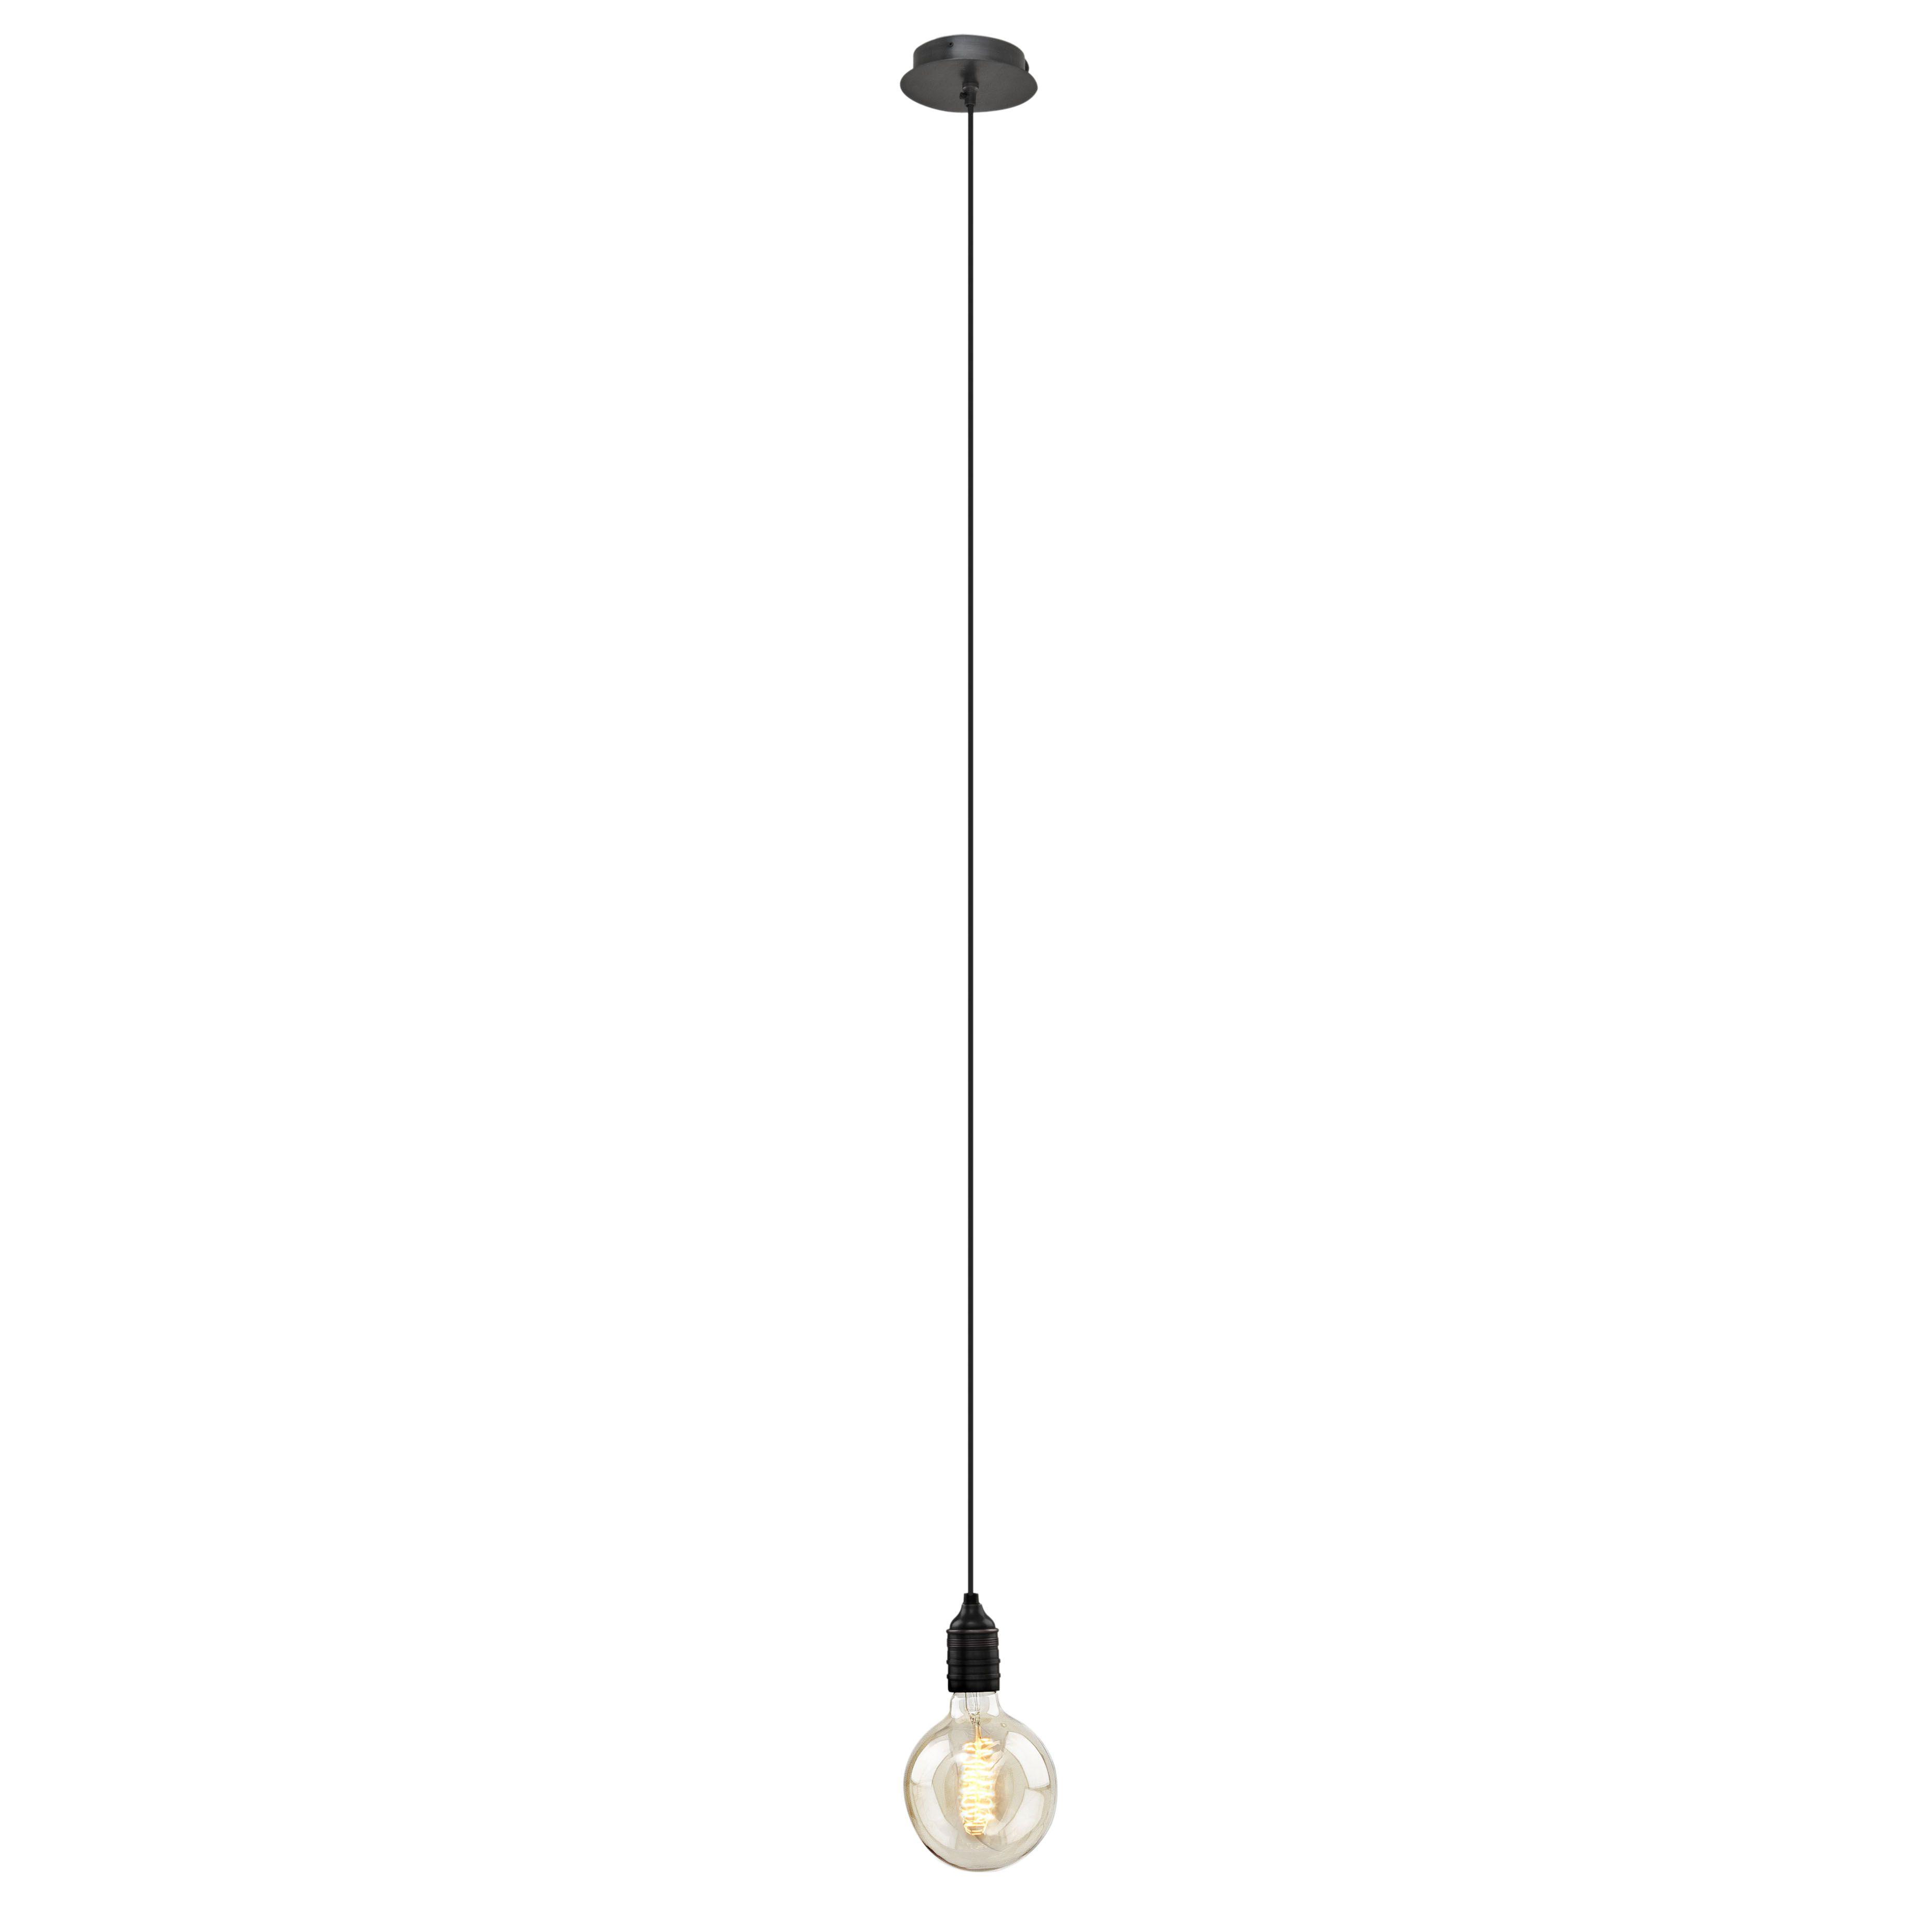 Купить Подвесной светильник Lamp Vintage Bulb Holder в интернет-магазине roooms.ru